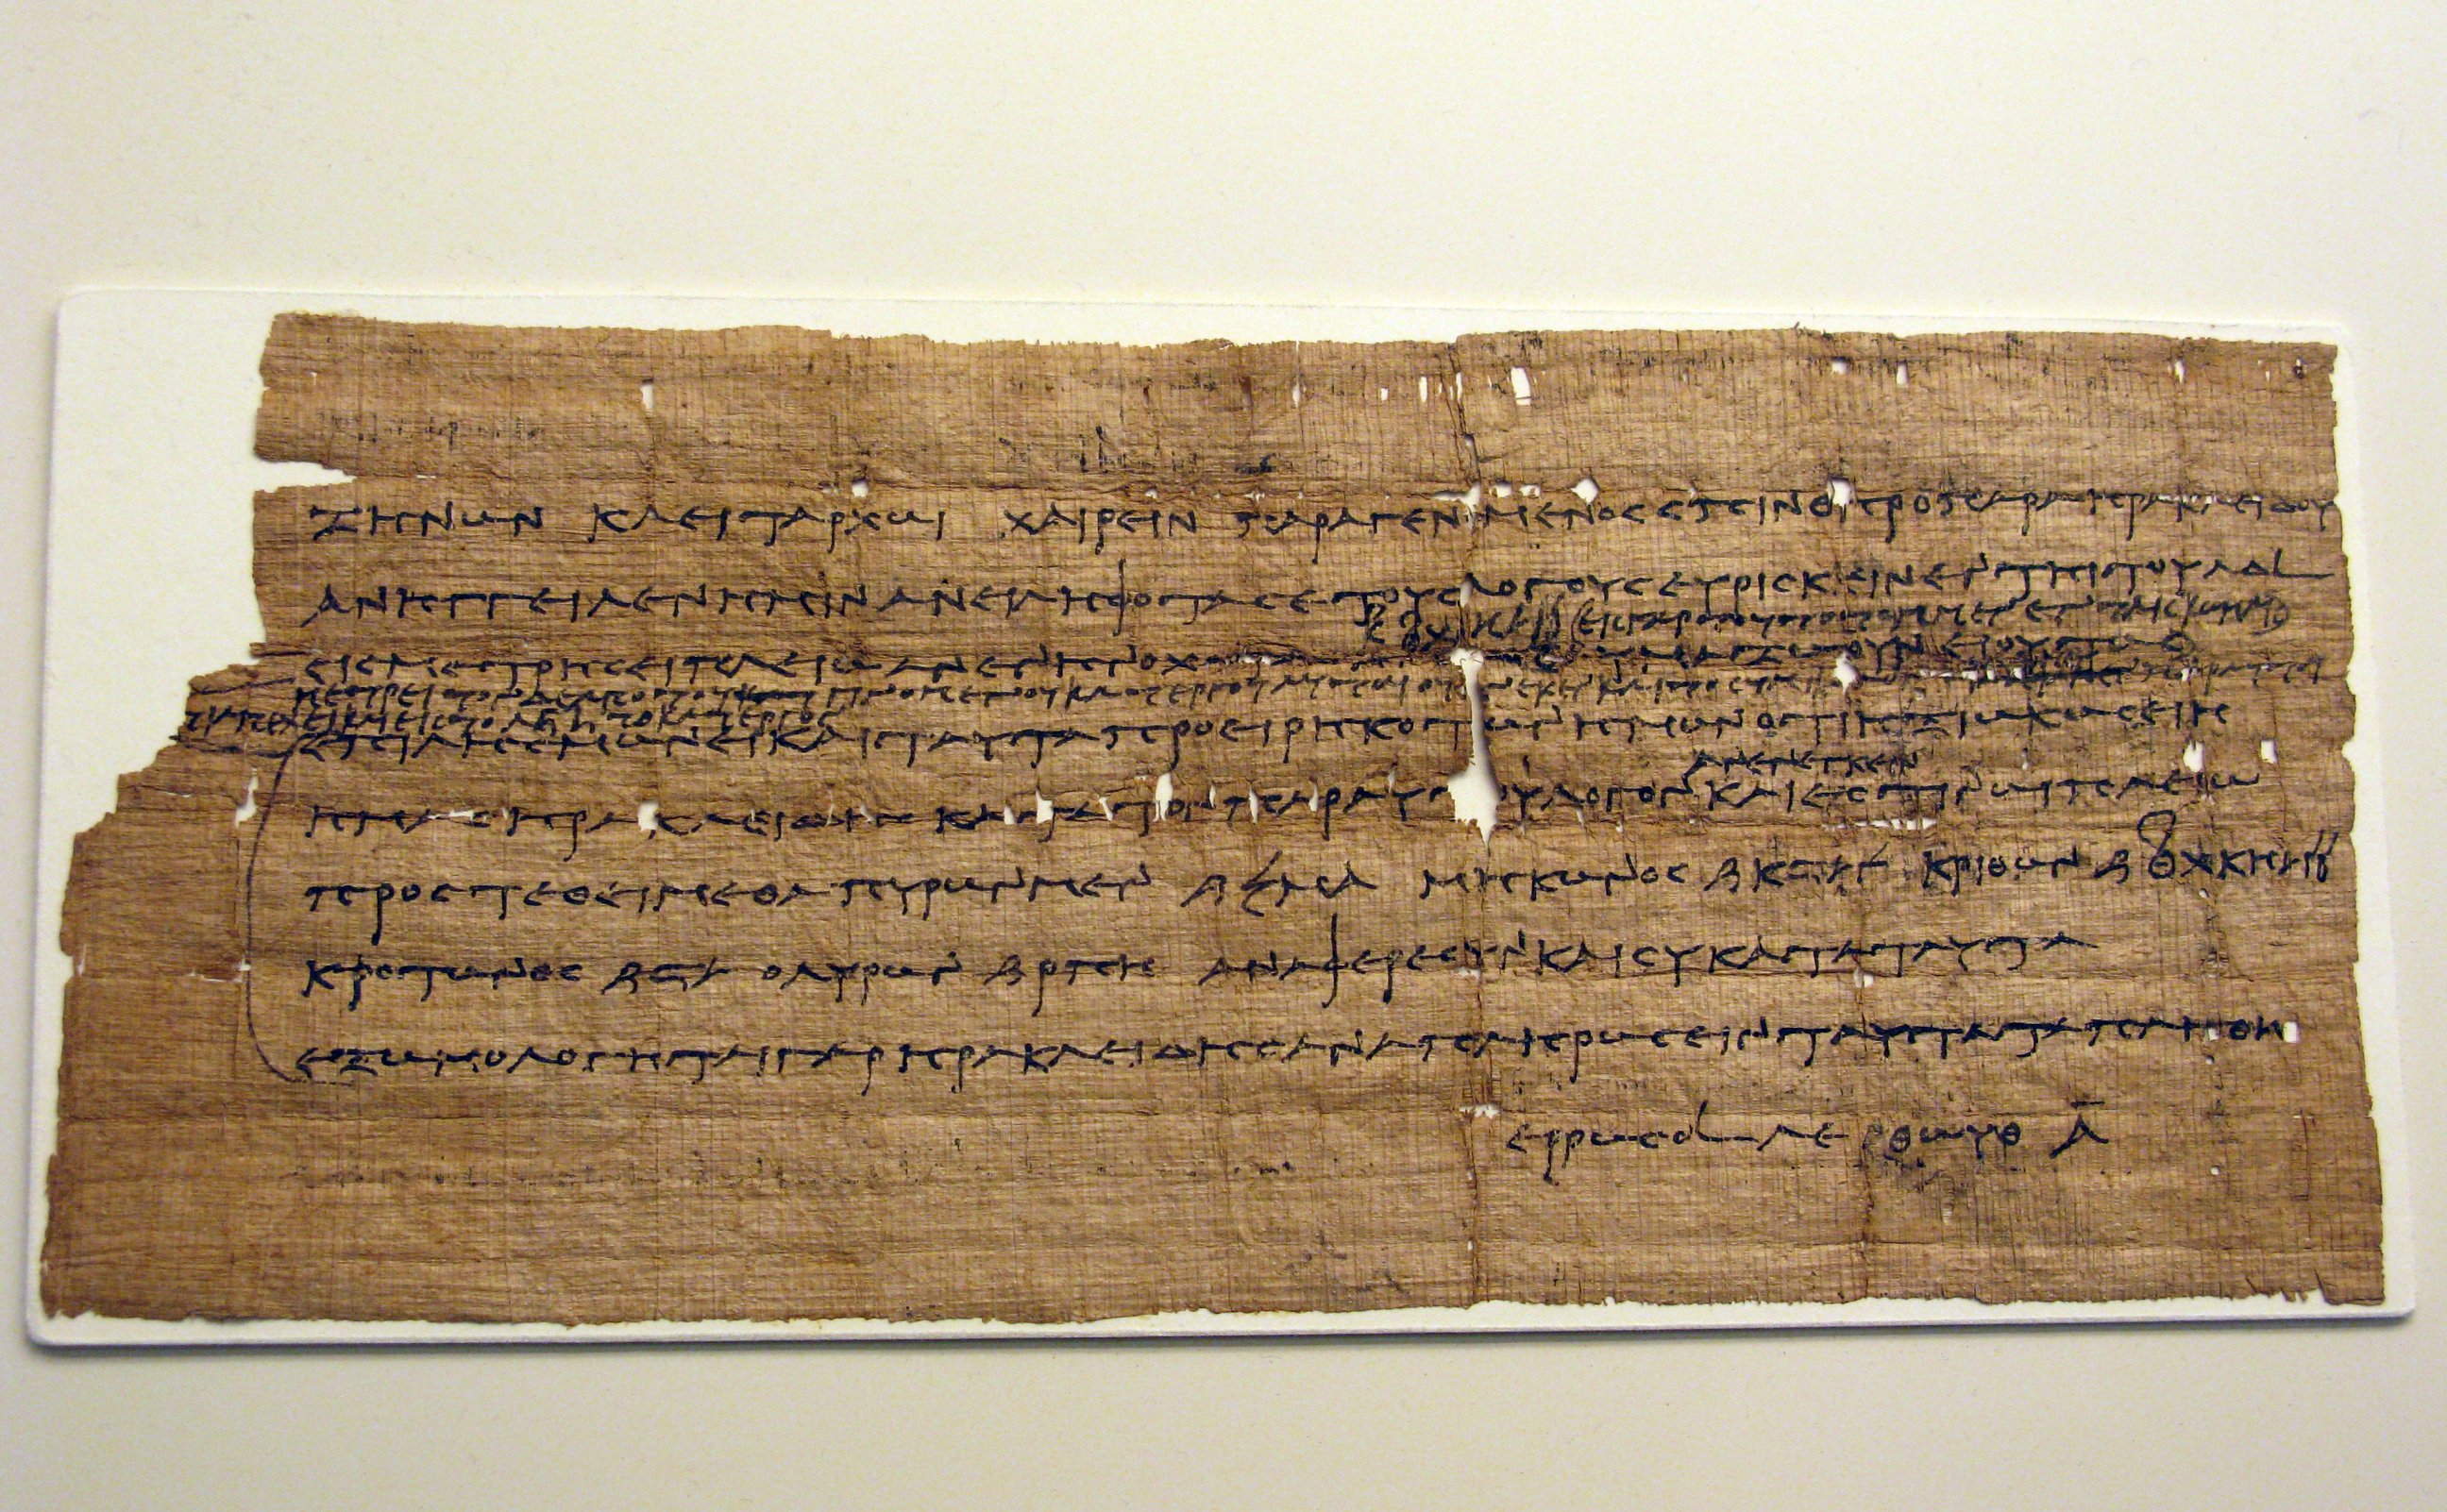 Papyrus in Greek regarding tax issues (3rd ca. BC.) (3210586934).jpg